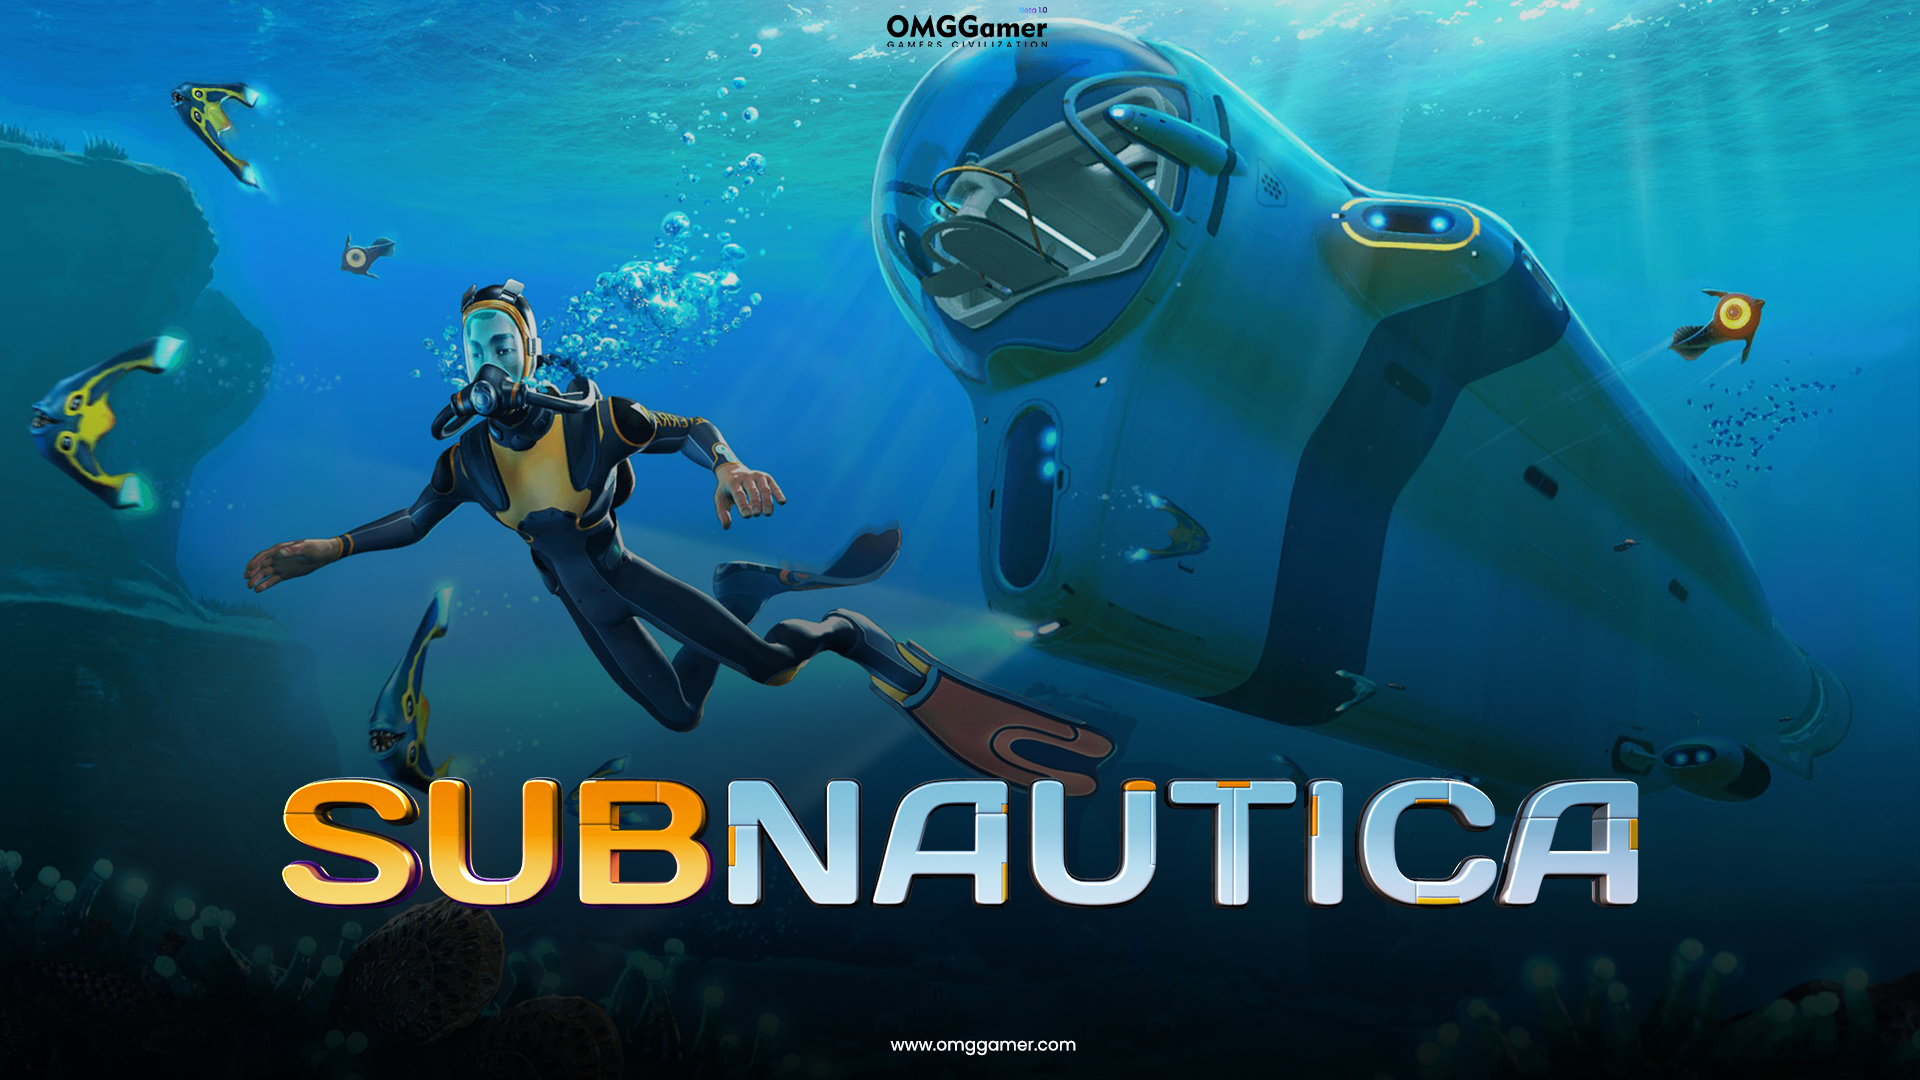 Subnautica 3 Release Date, Trailer & Rumors